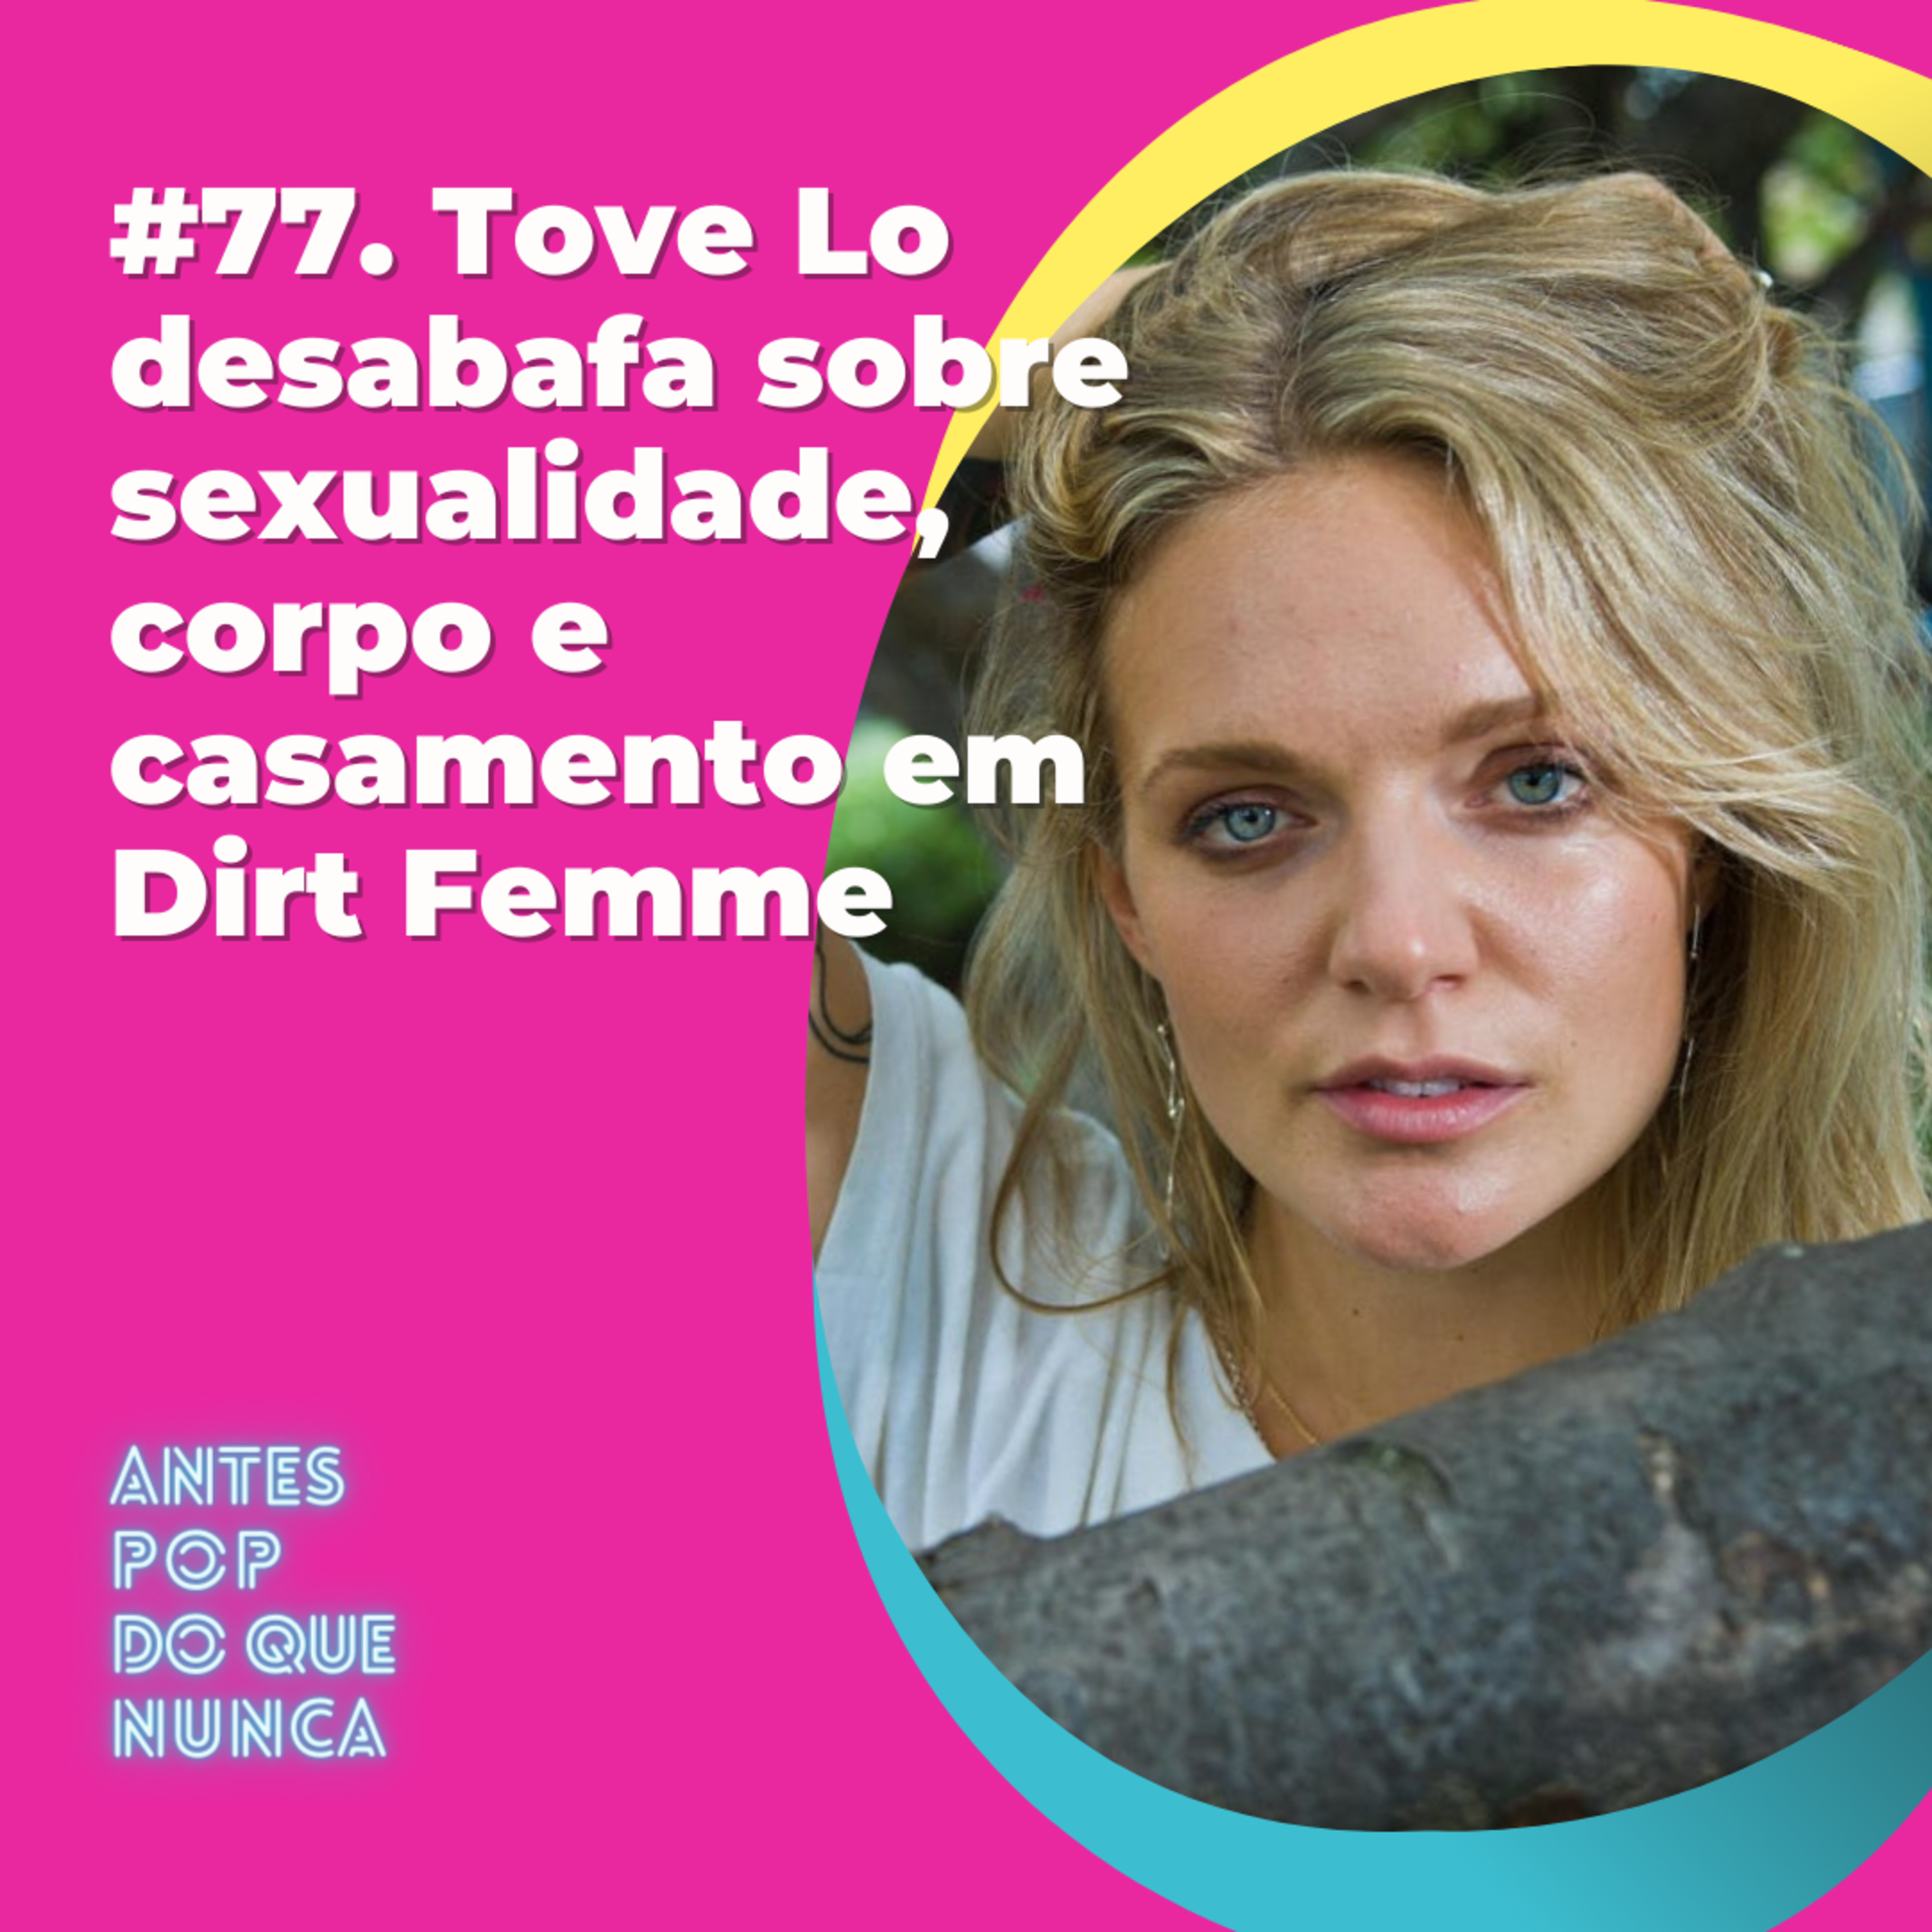 #77. Tove Lo desabafa sobre sexualidade, corpo e casamento em Dirt Femme